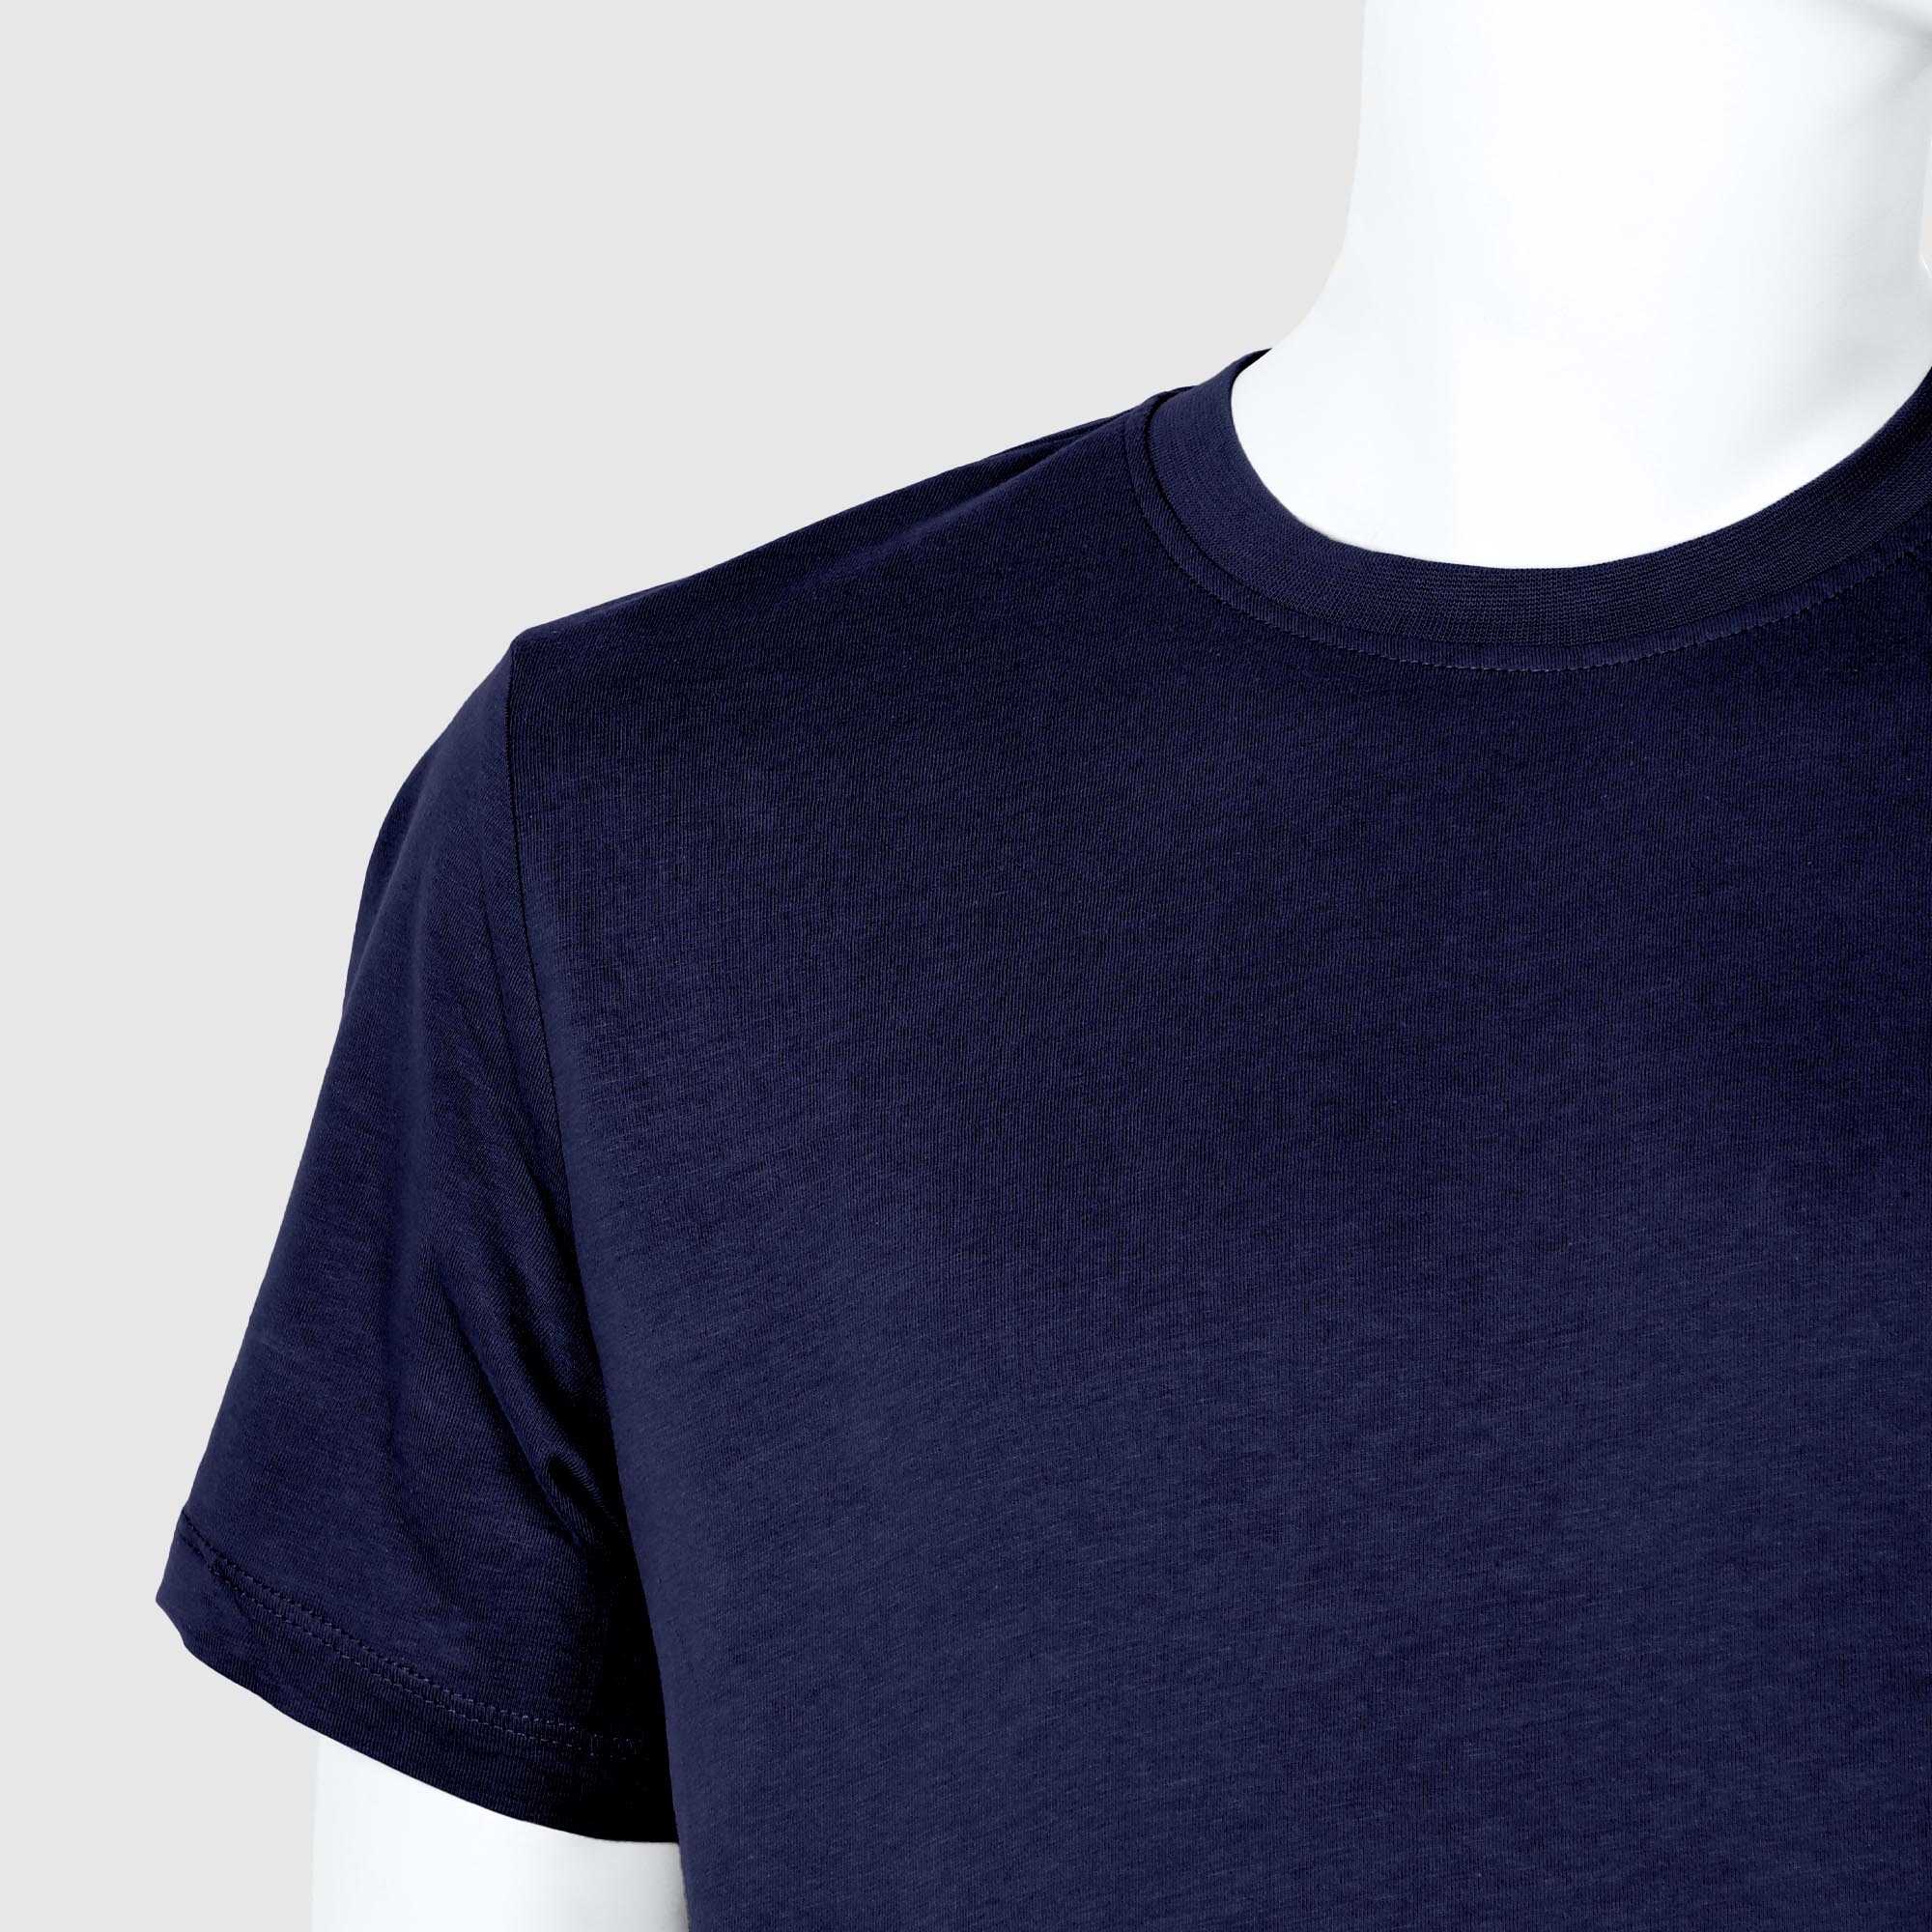 Мужская футболка Diva Teks синяя (DTD-05), цвет синий, размер 44-46 - фото 3